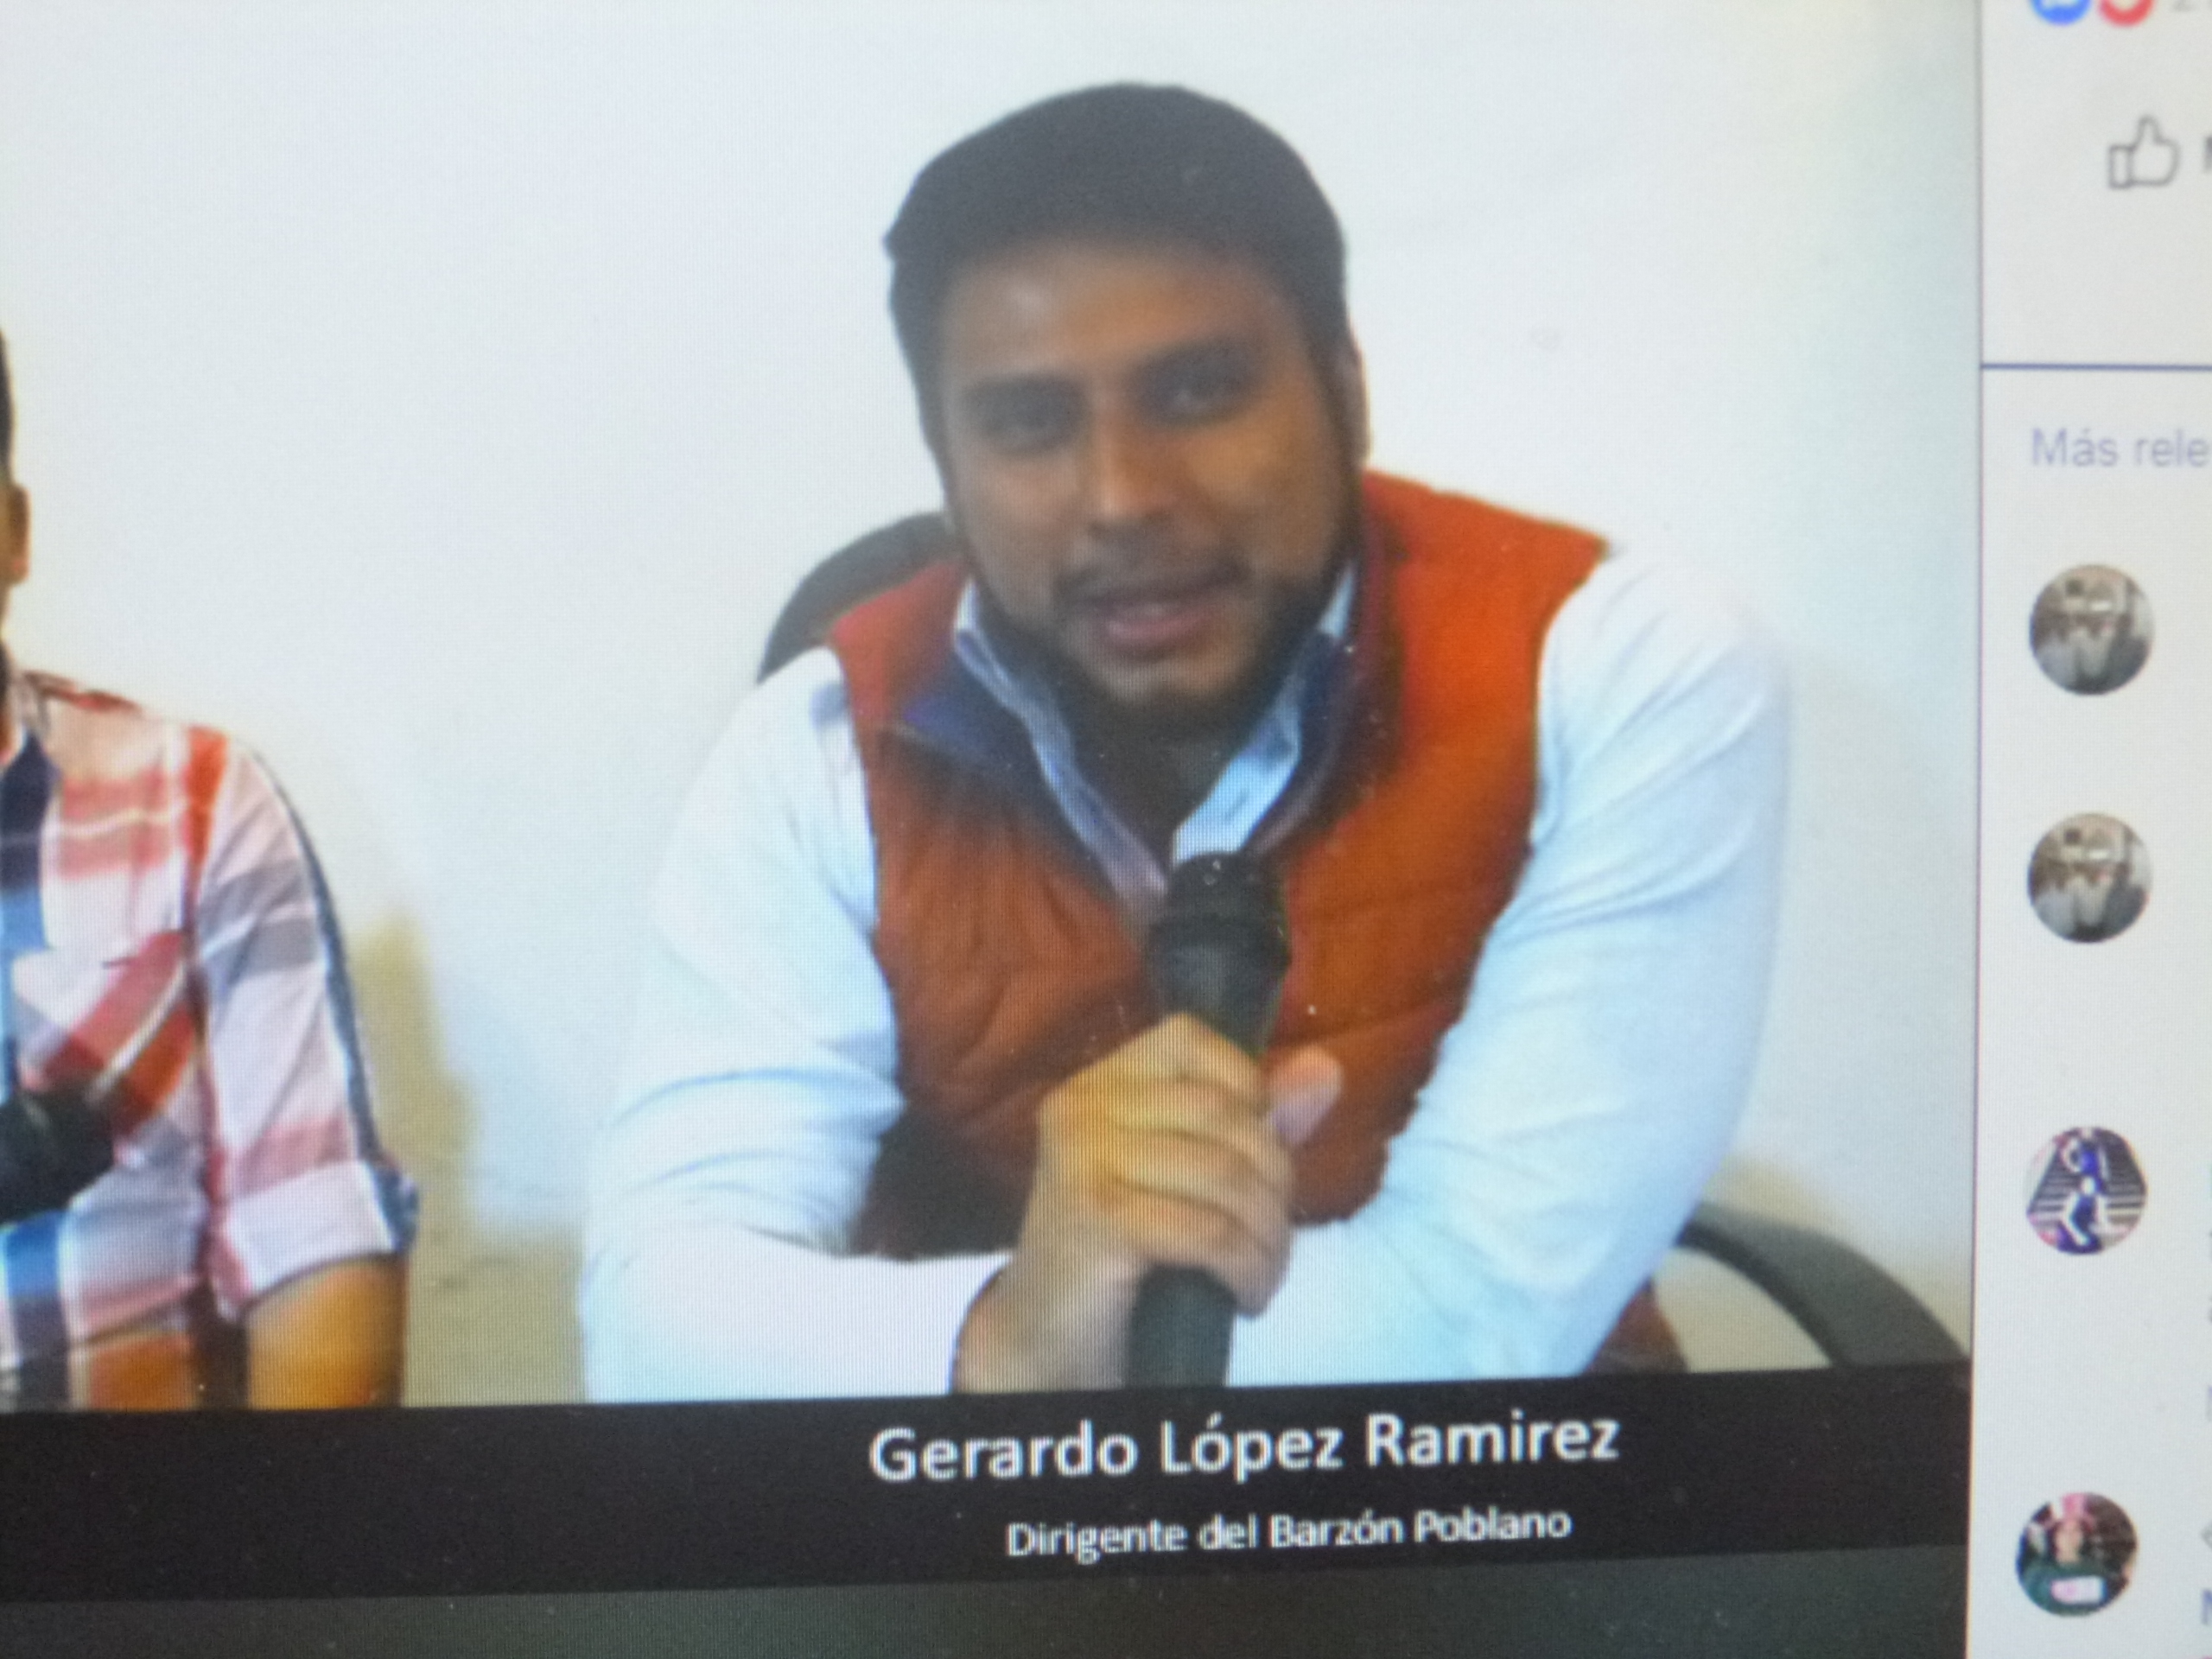 El Barzón poblano capta denuncias por alza injustificada de precios: Gerardo López